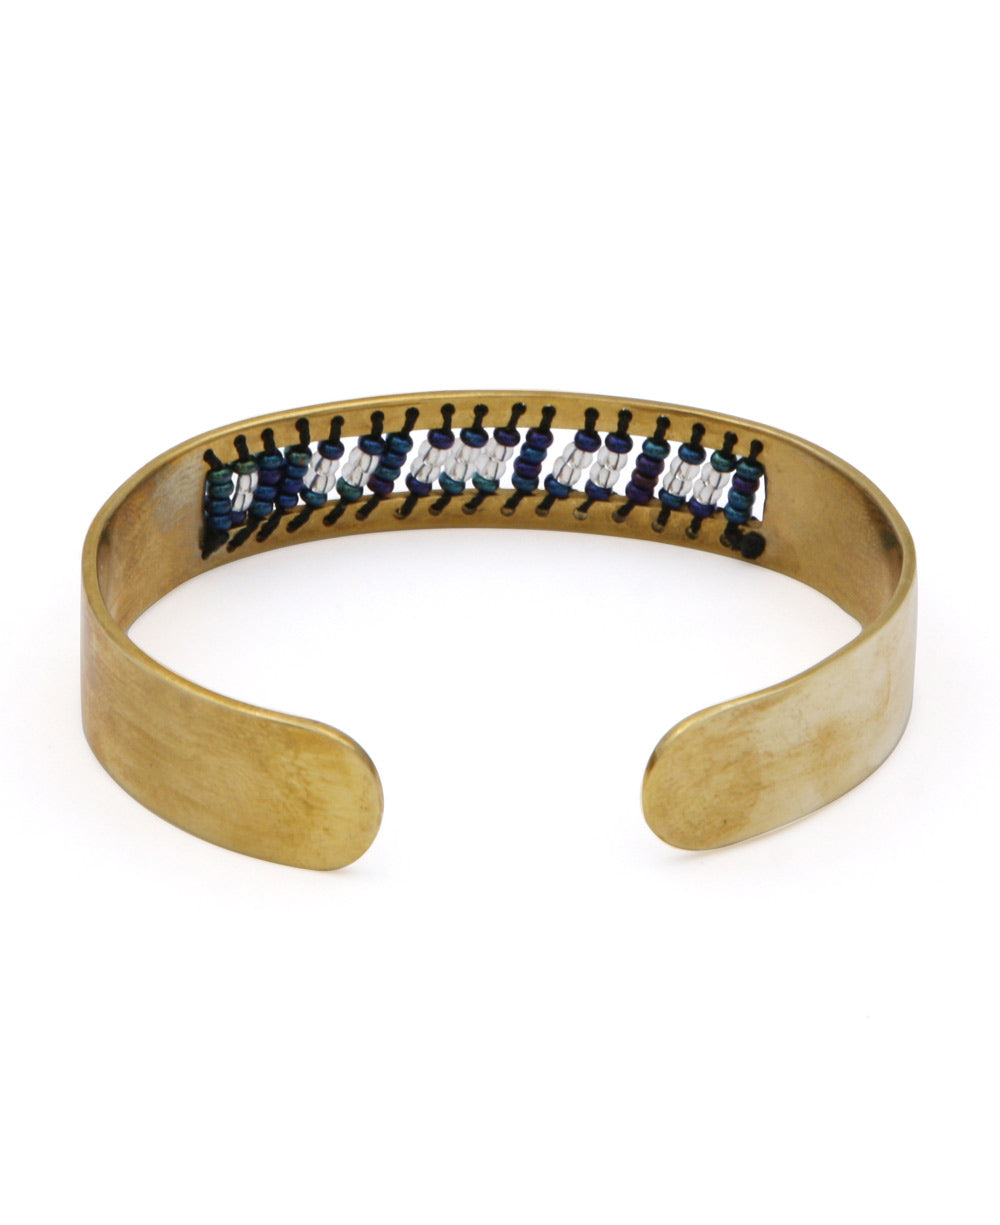 Morse Code Beaded Empower Bracelet, Kenya – Cultural Elements